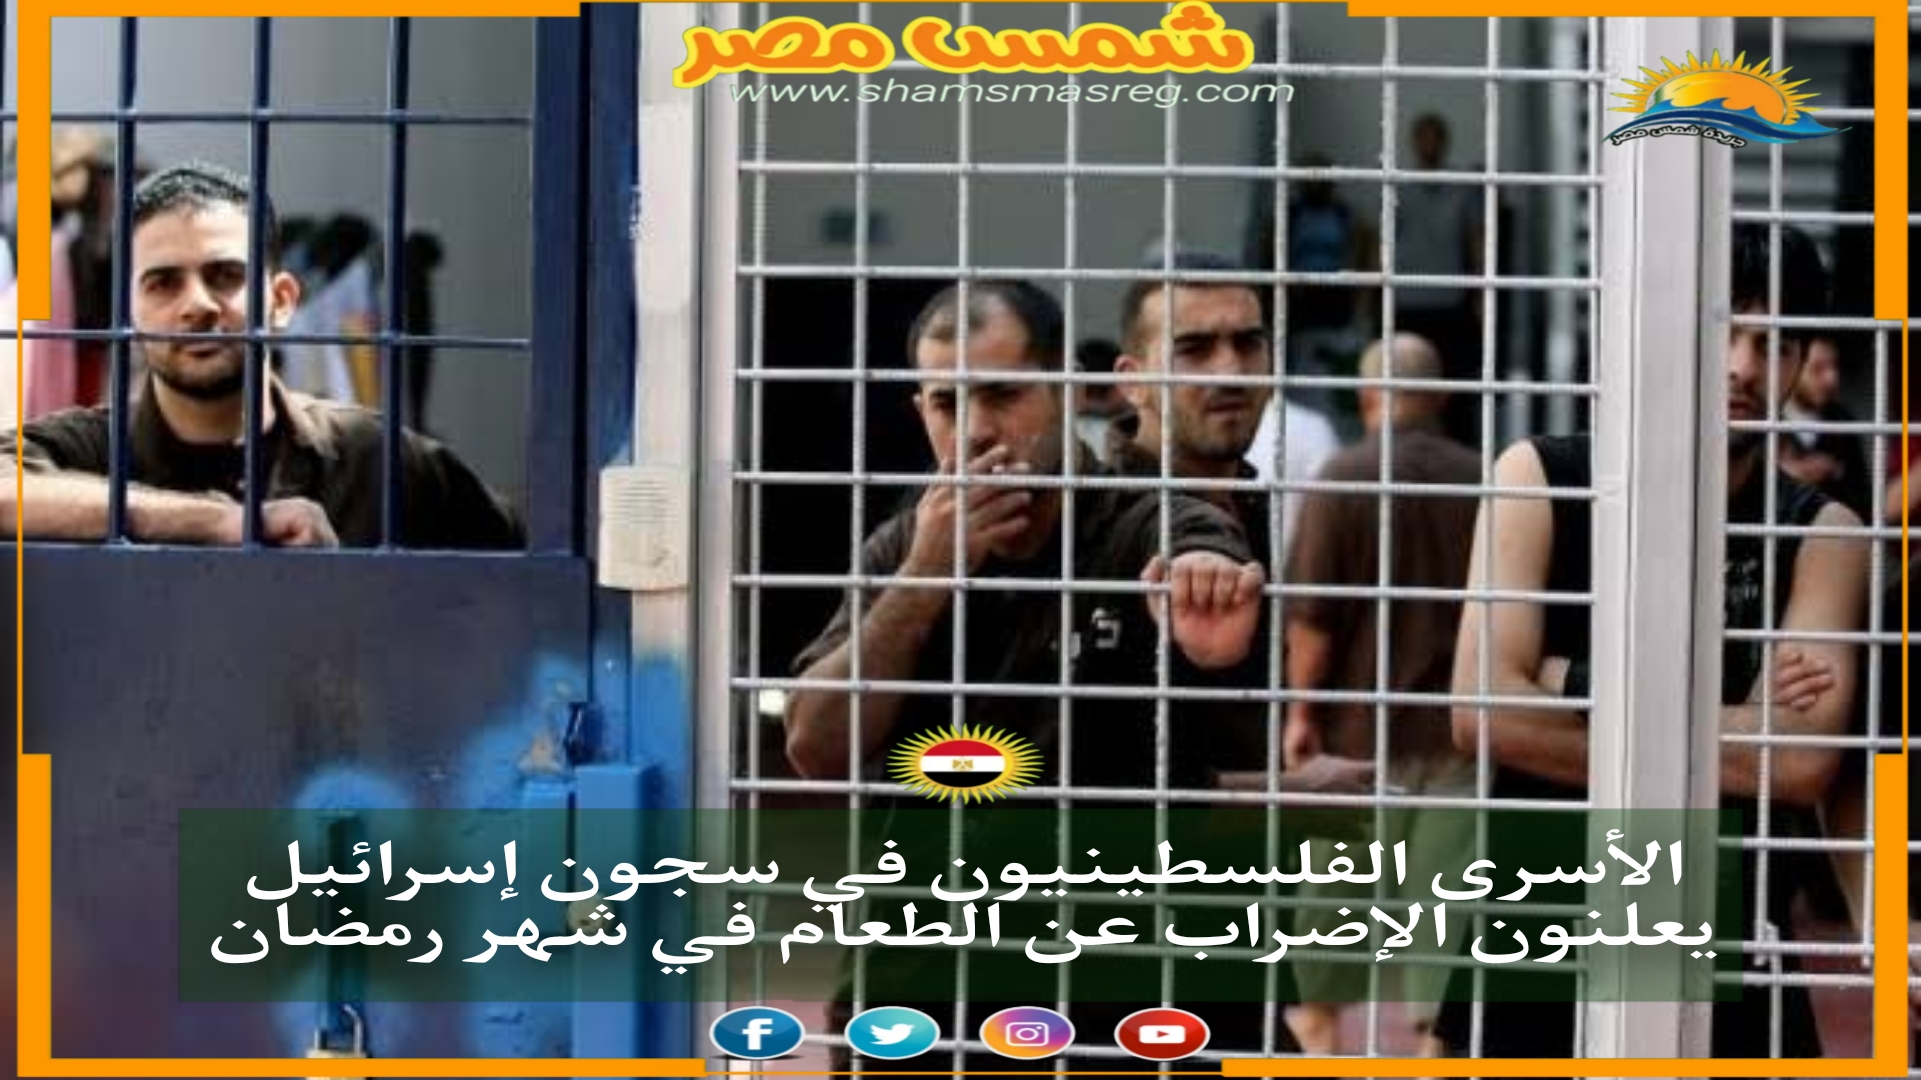 الأسرى الفلسطينيون في سجون إسرائيل يعلنون الإضراب عن الطعام في شهر رمضان